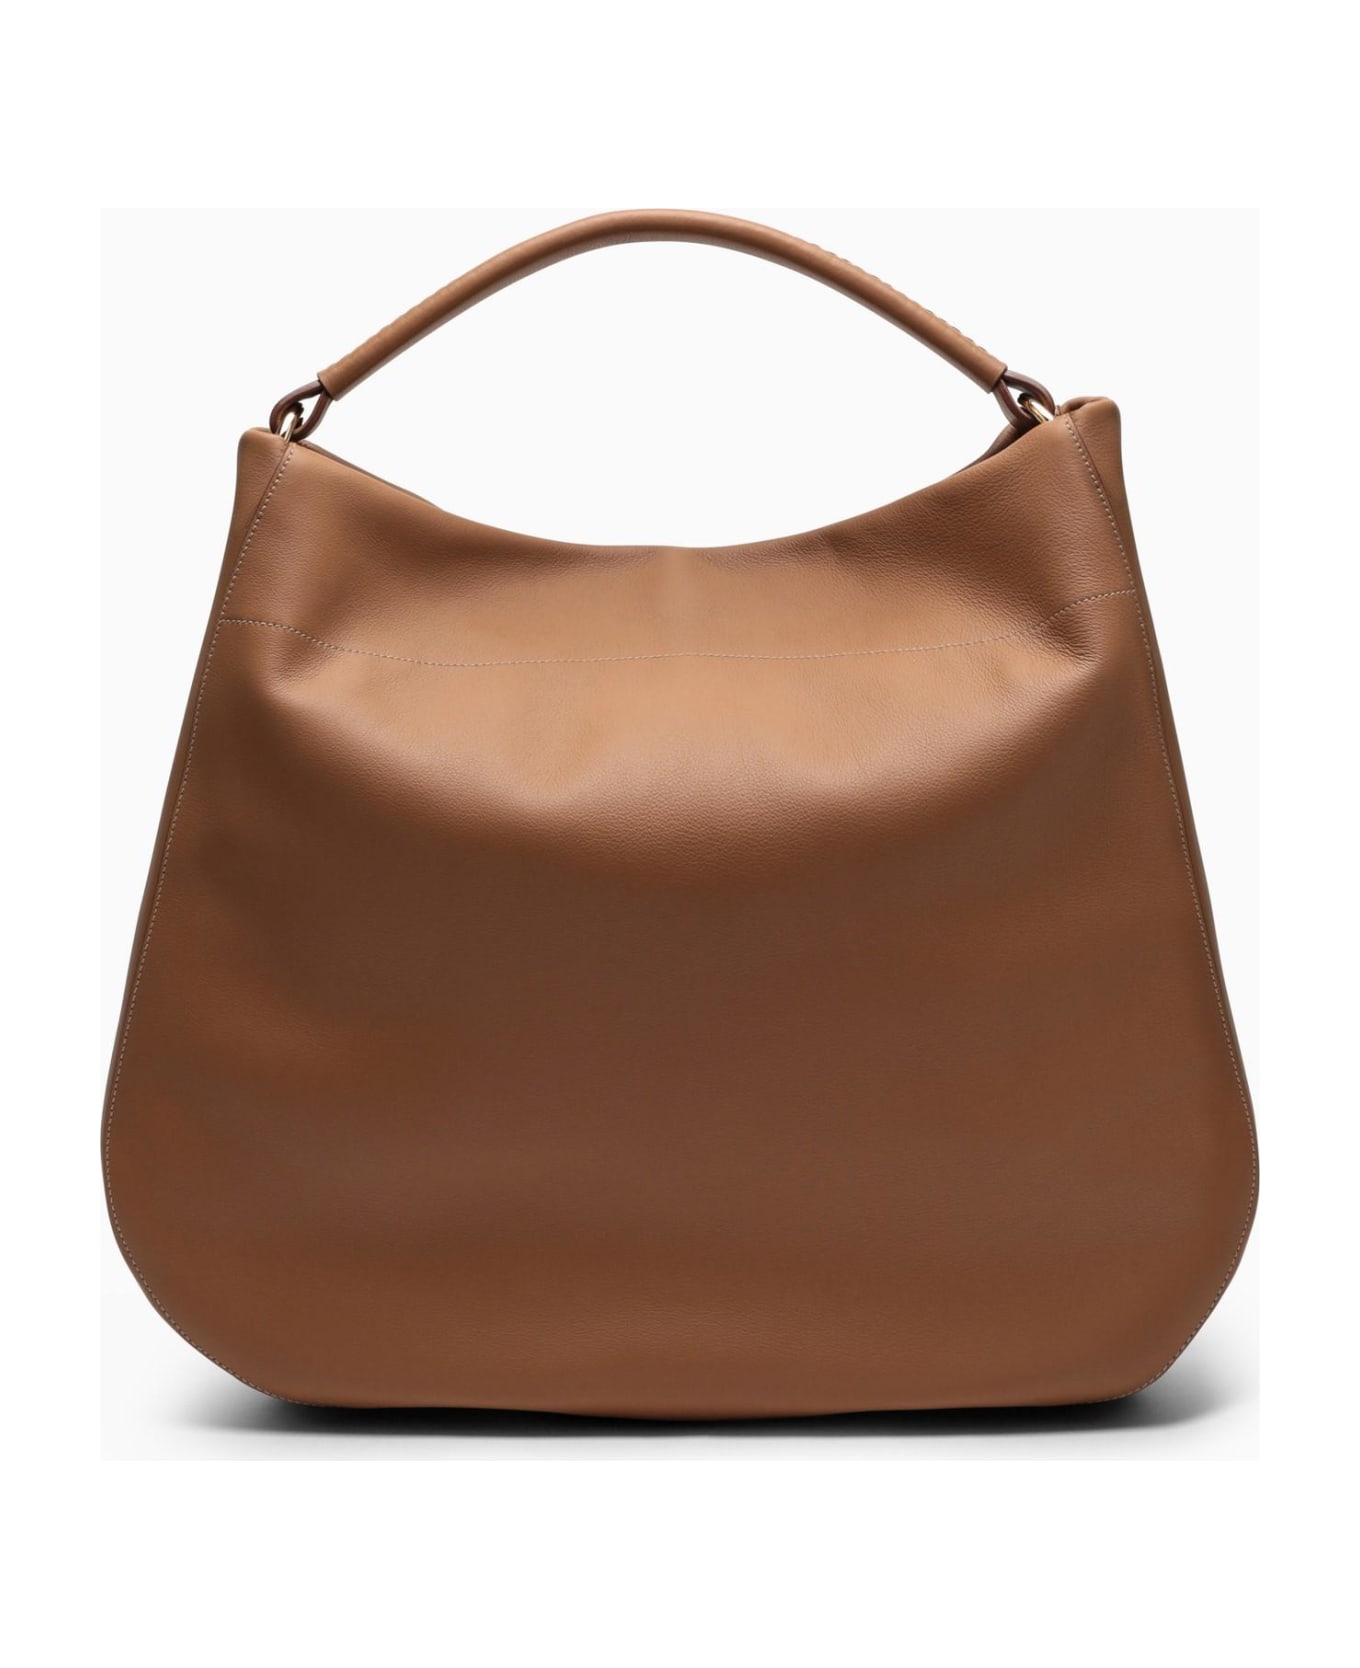 Prada Large Caramel-coloured Leather Shoulder Bag - CARAMEL 0